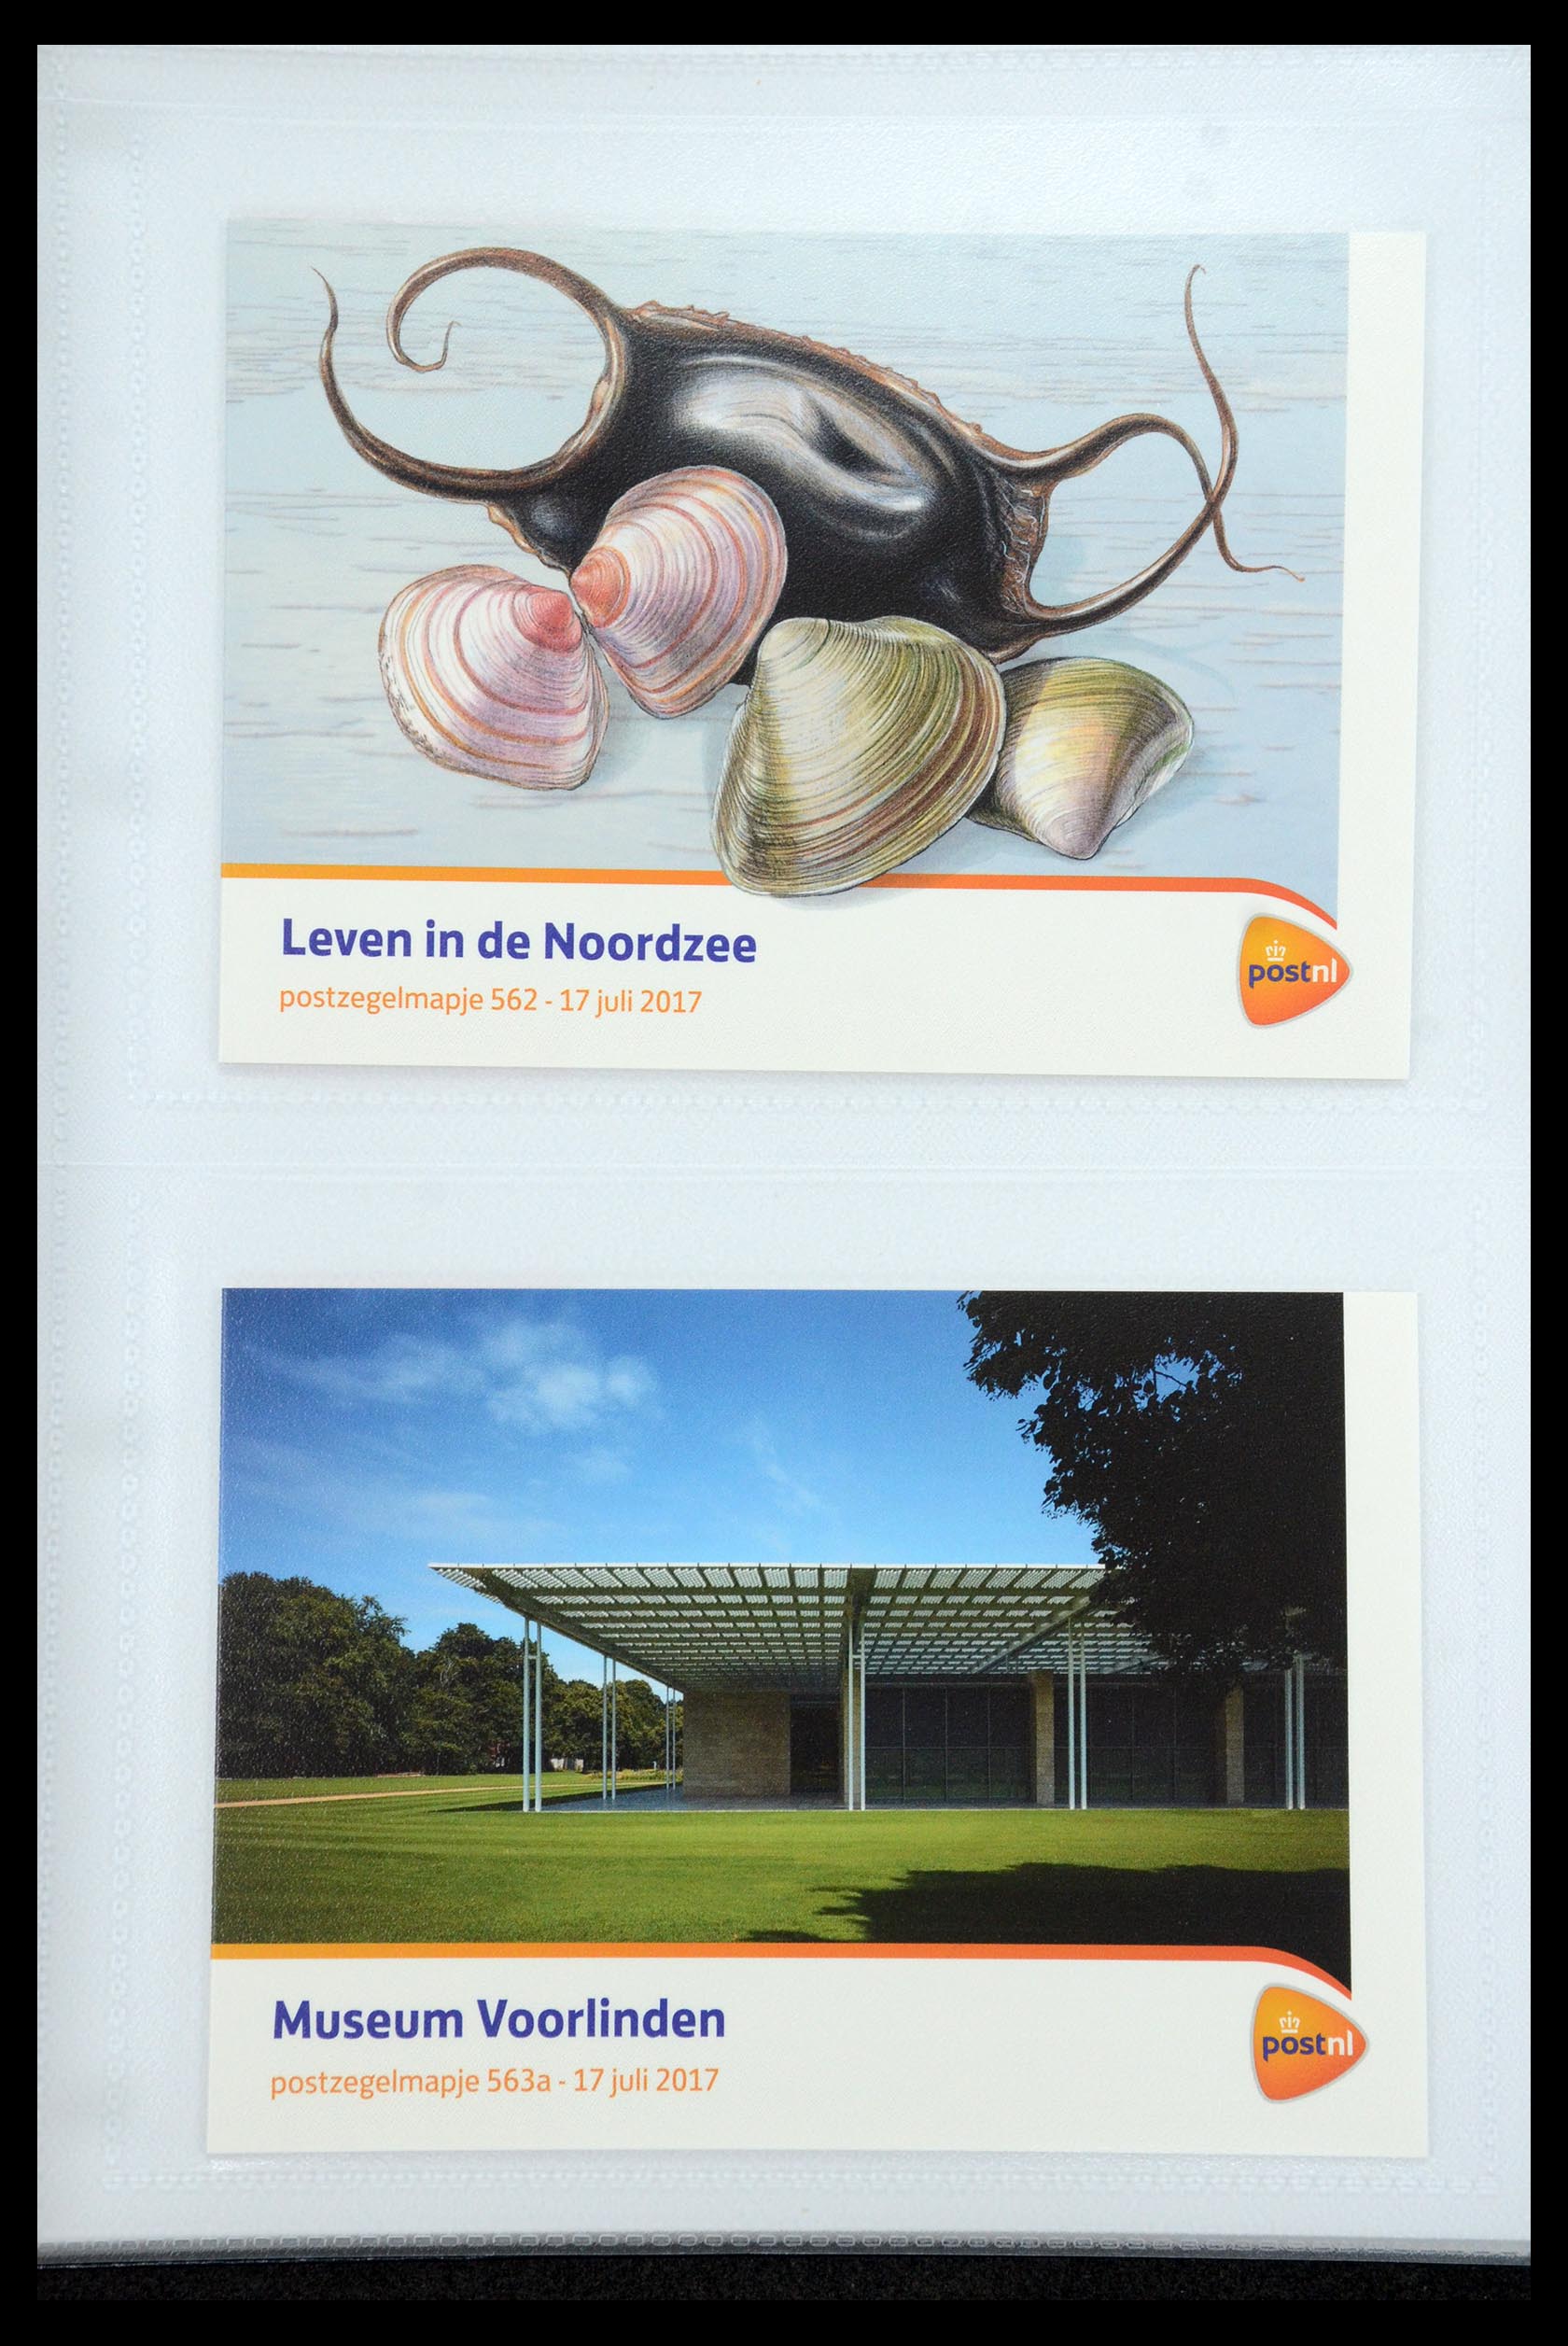 35947 337 - Stamp Collection 35947 Netherlands PTT presentation packs 1982-2019!